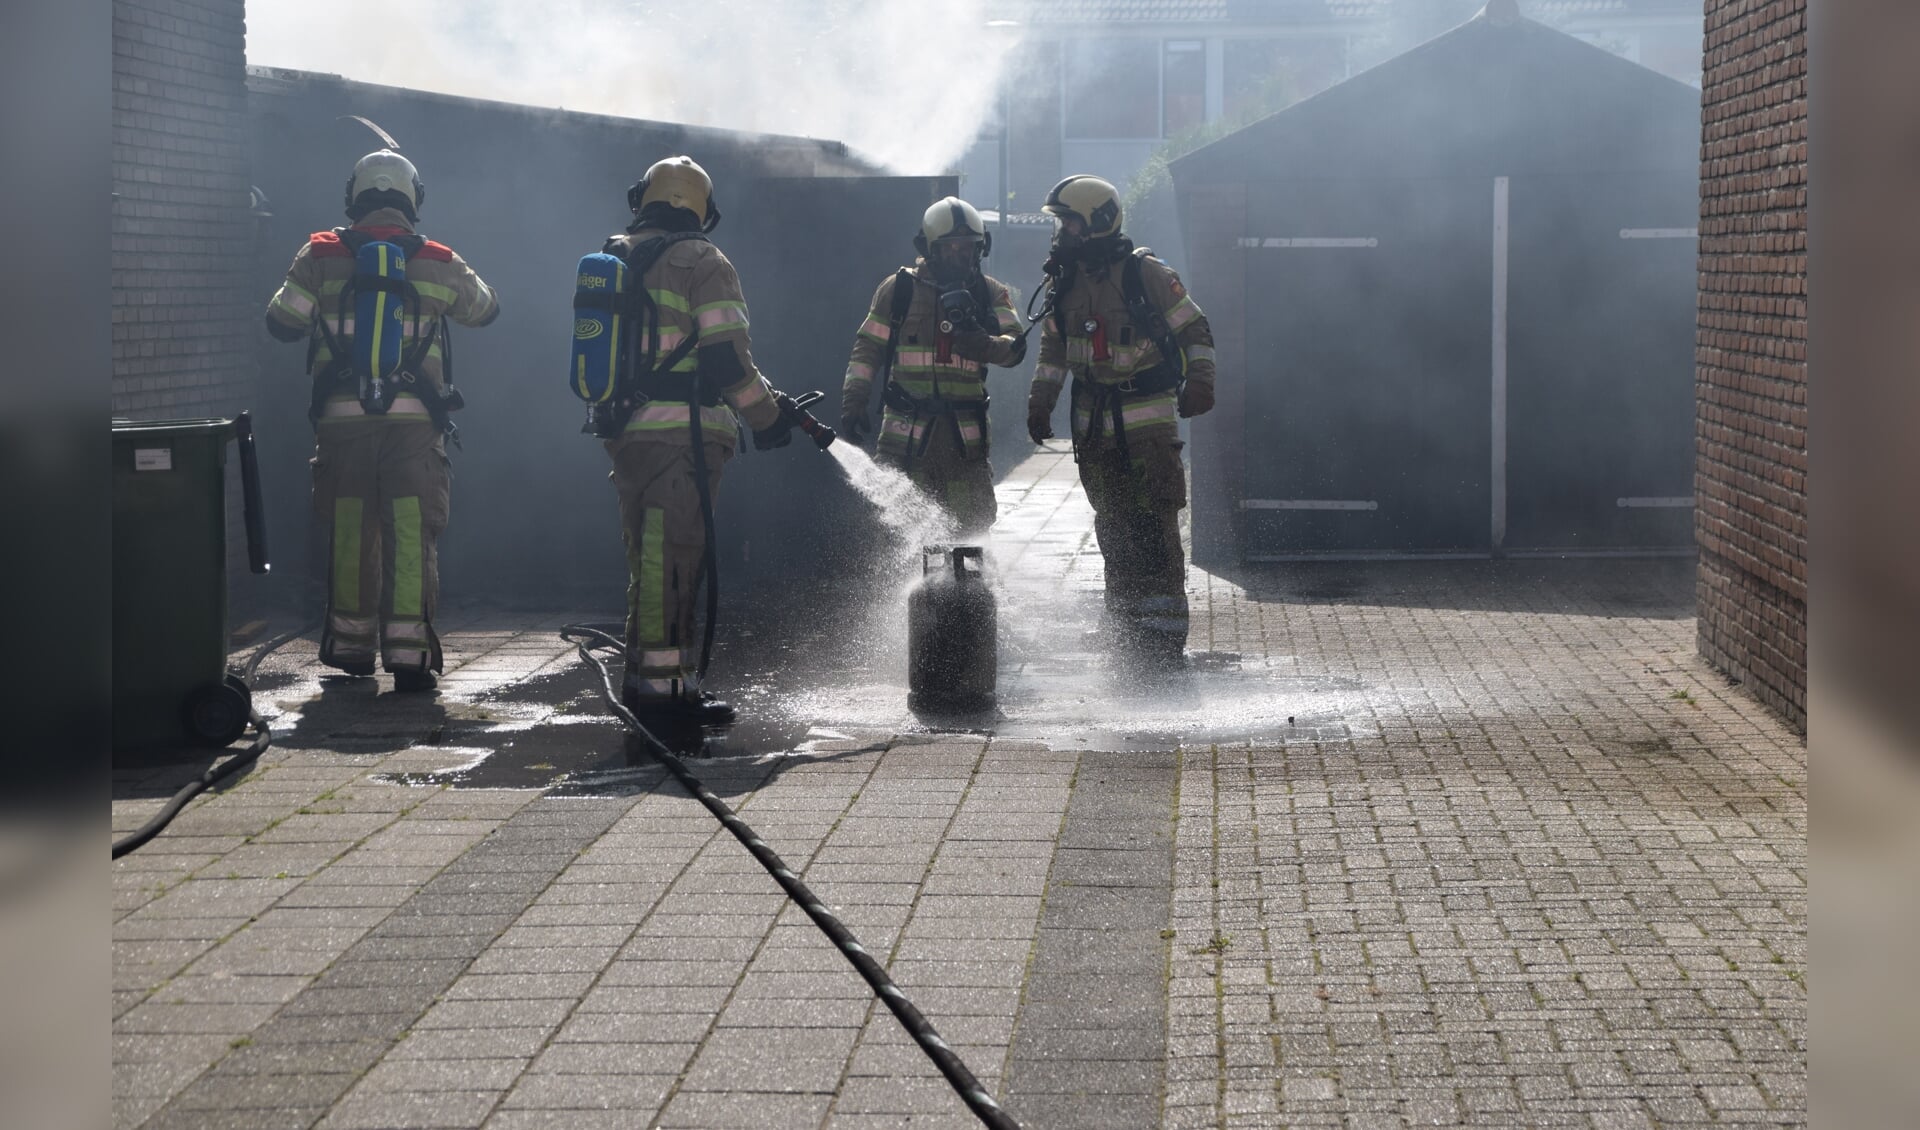 Brandweermannen koelen de gasfles die in de brandende schuur stond.